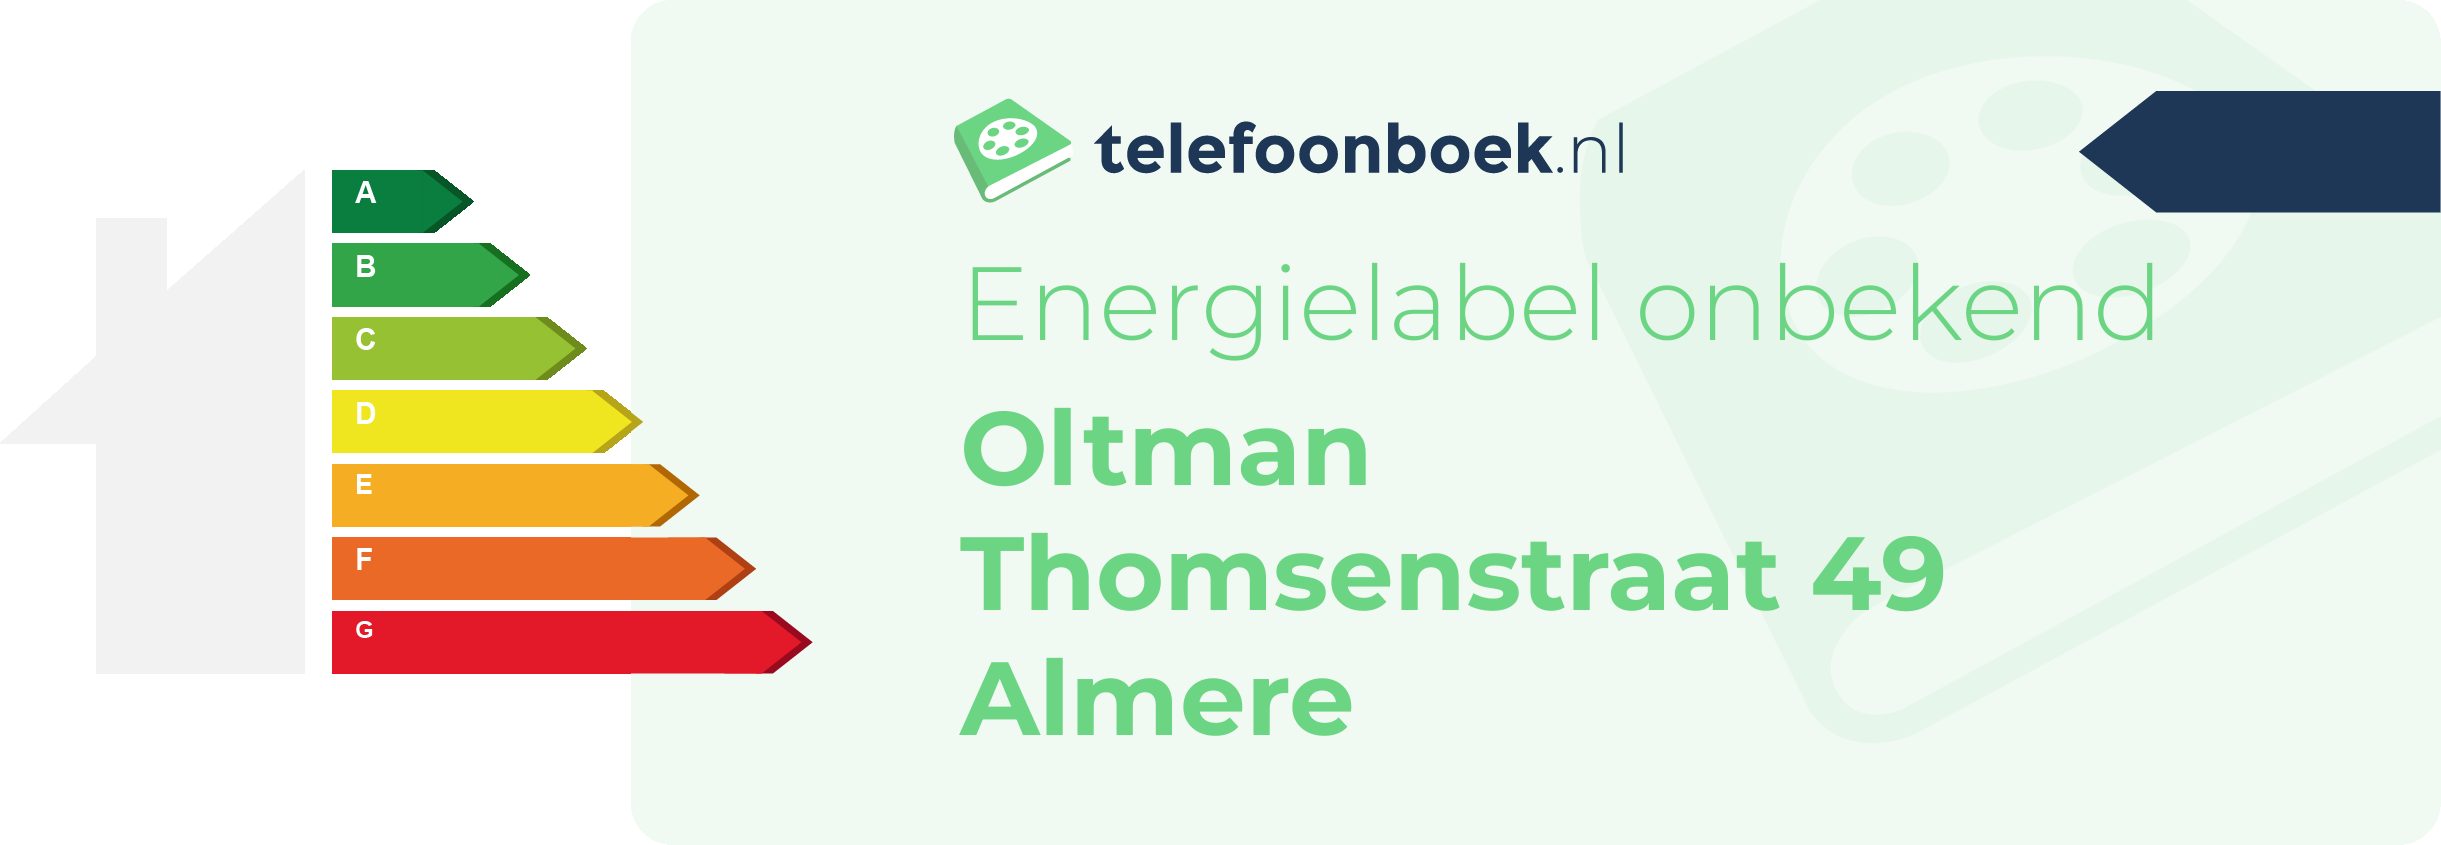 Energielabel Oltman Thomsenstraat 49 Almere